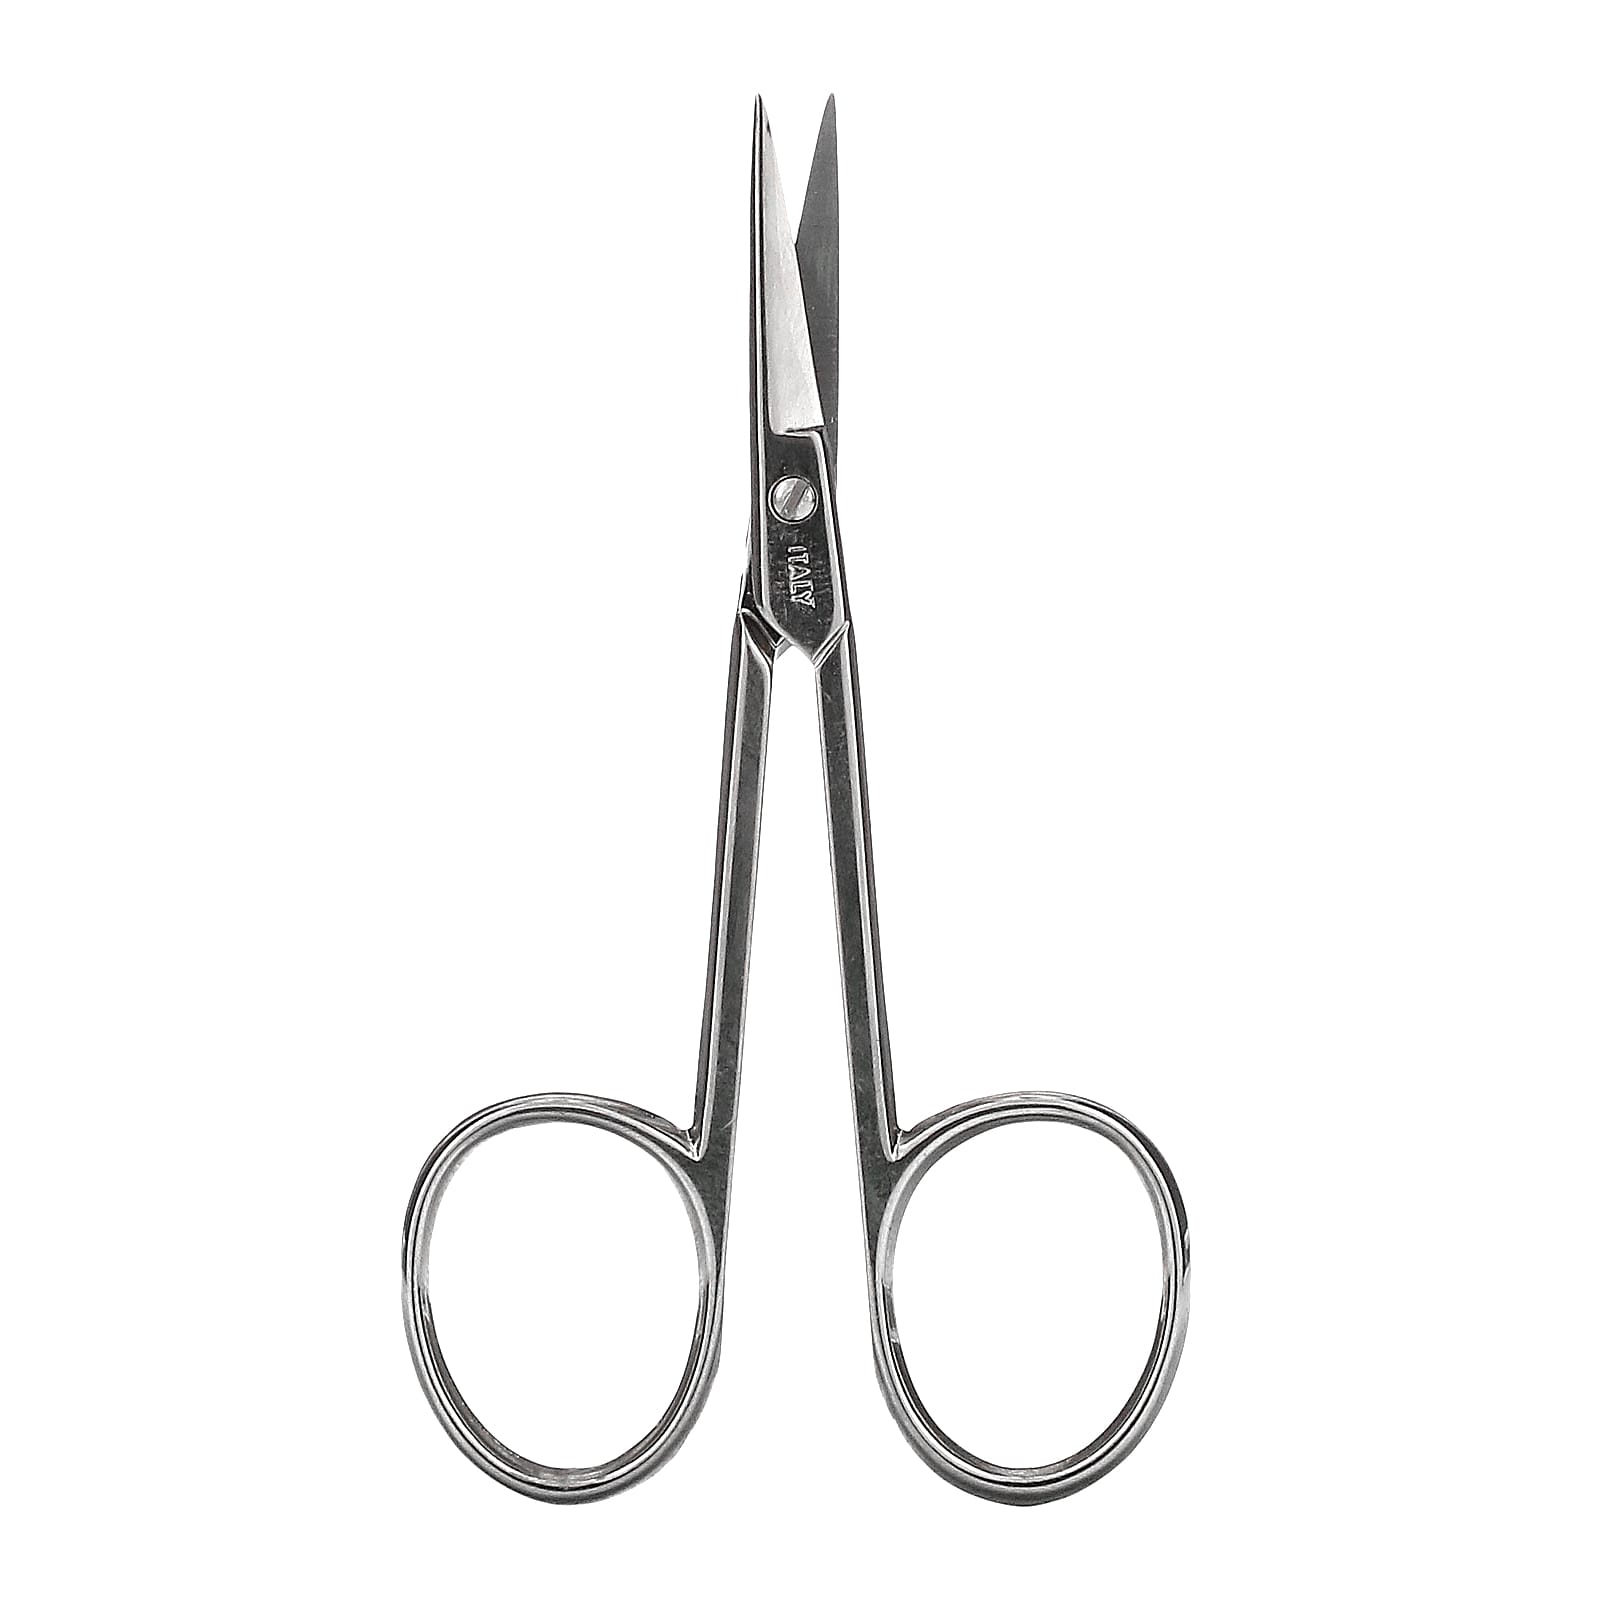 denco-cuticle-scissors-2102-1-tool